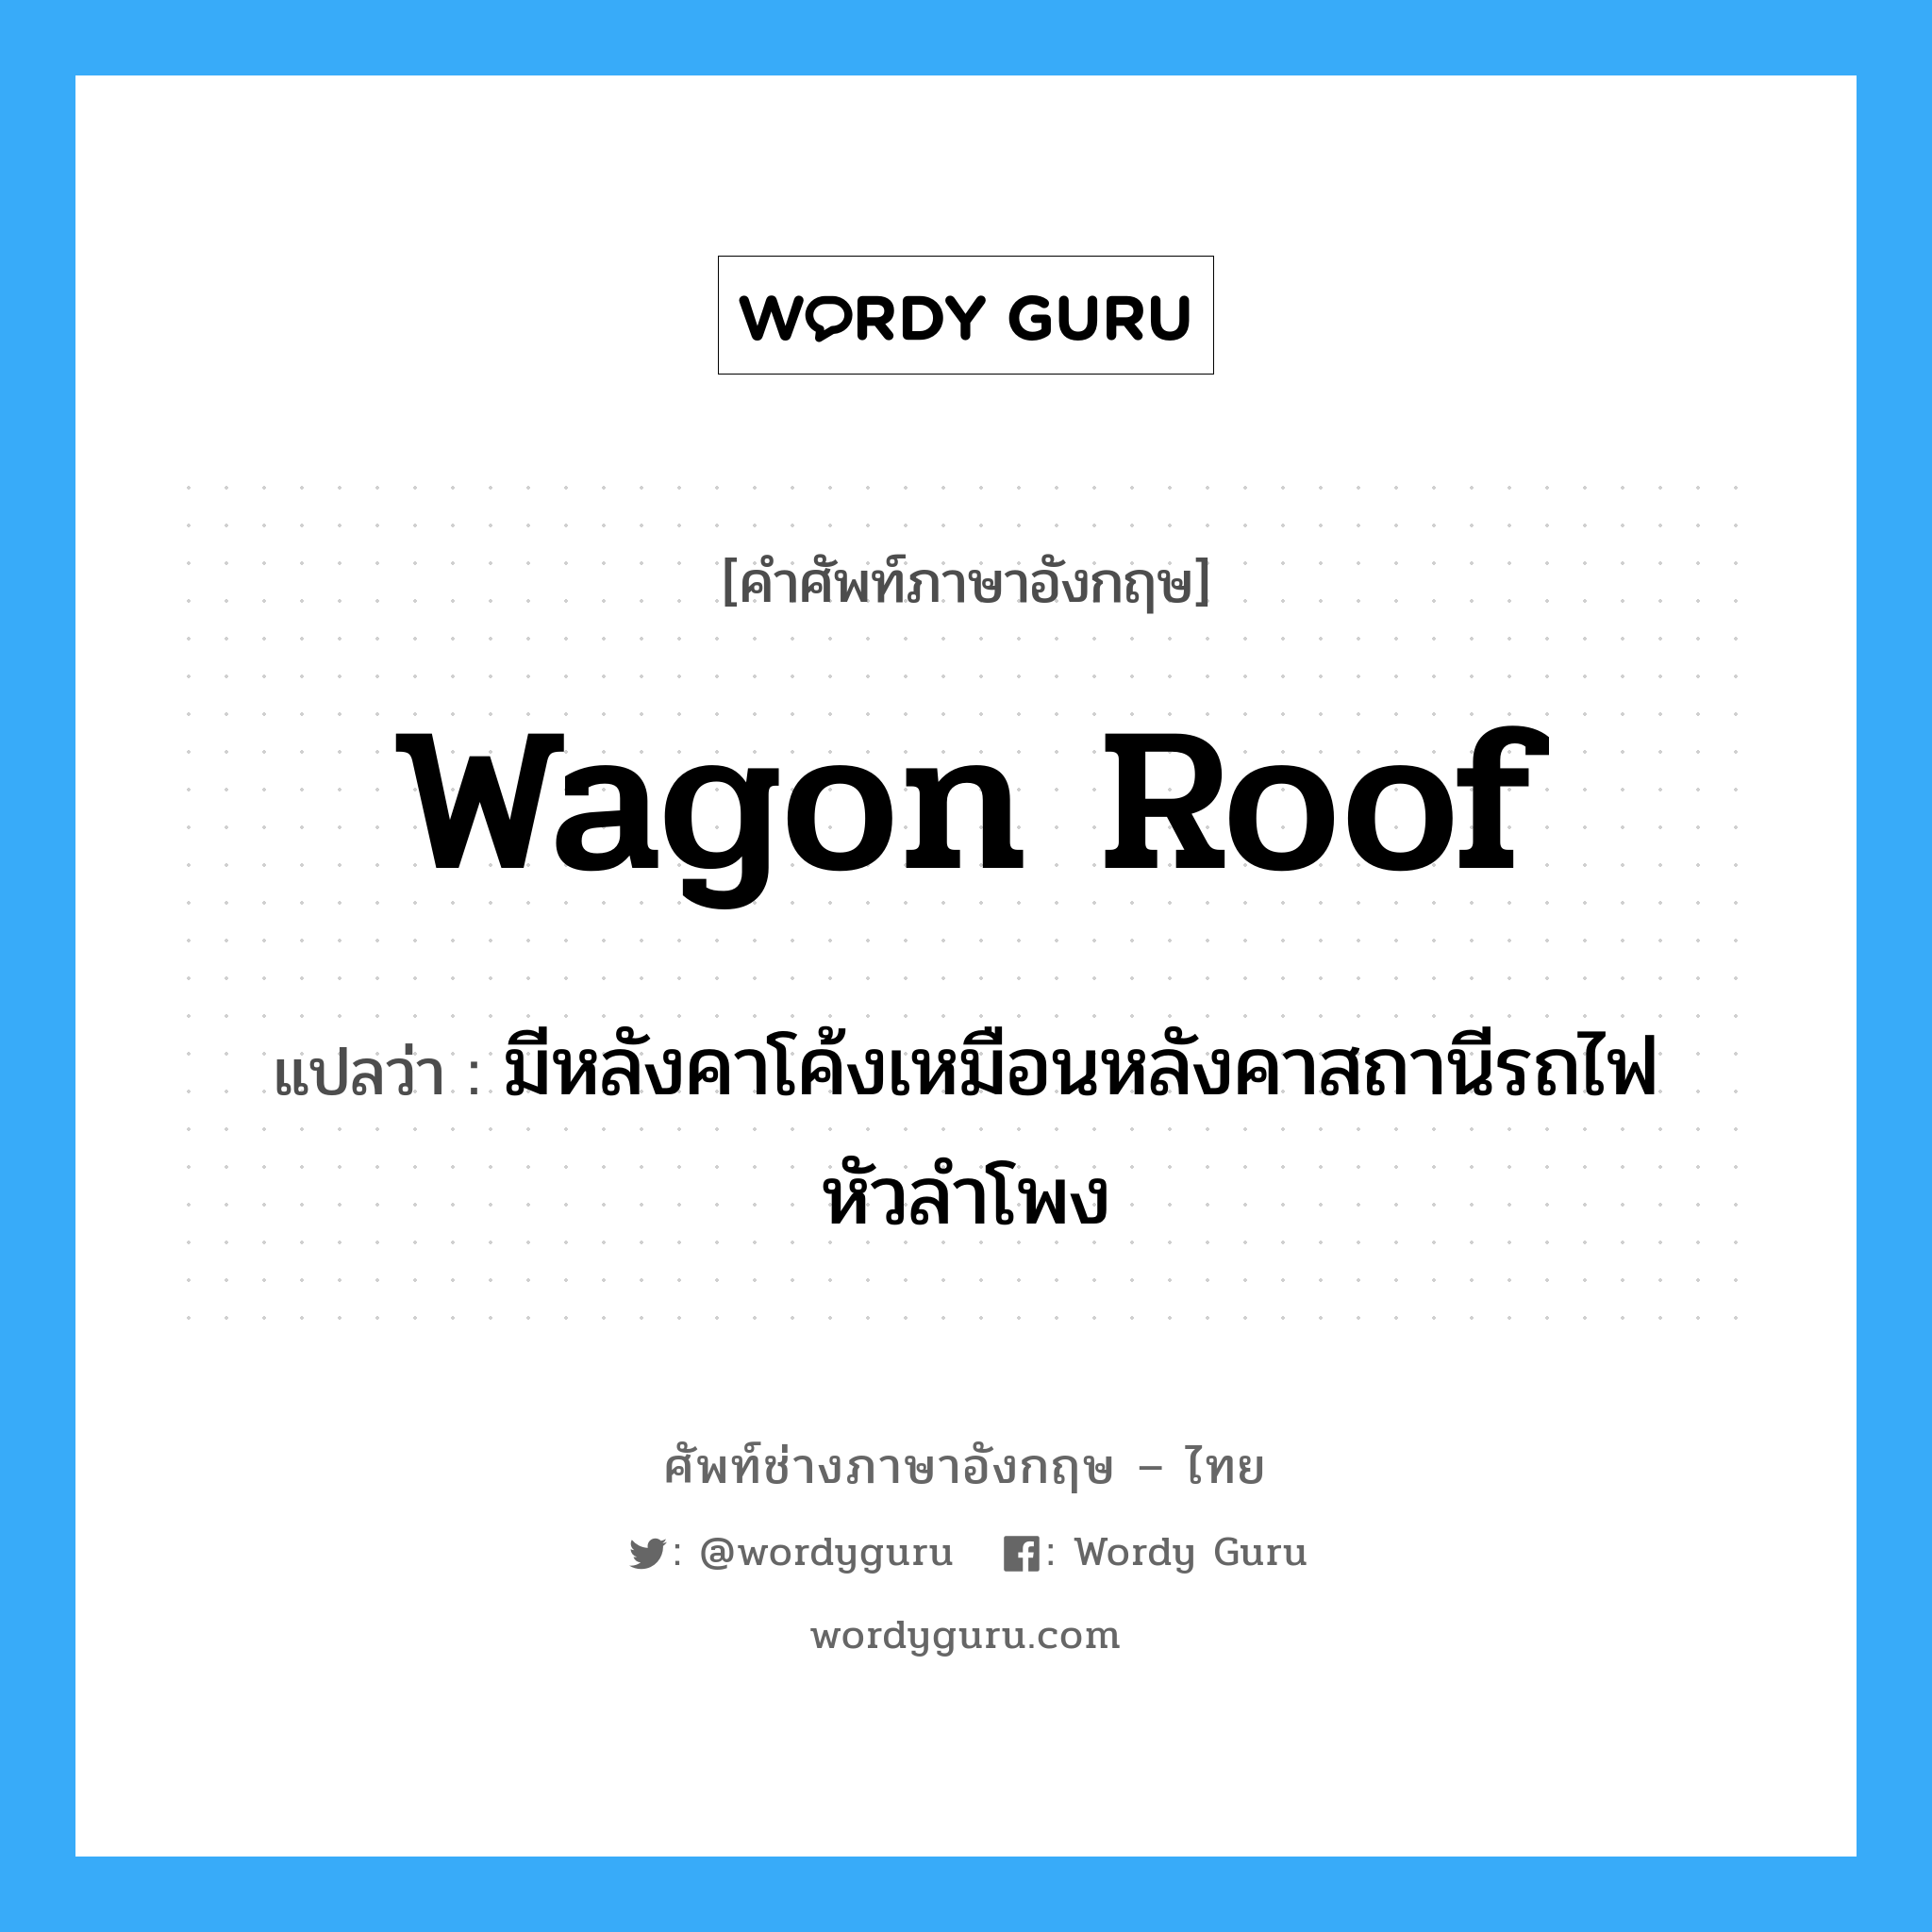 wagon roof แปลว่า?, คำศัพท์ช่างภาษาอังกฤษ - ไทย wagon roof คำศัพท์ภาษาอังกฤษ wagon roof แปลว่า มีหลังคาโค้งเหมือนหลังคาสถานีรถไฟหัวลำโพง